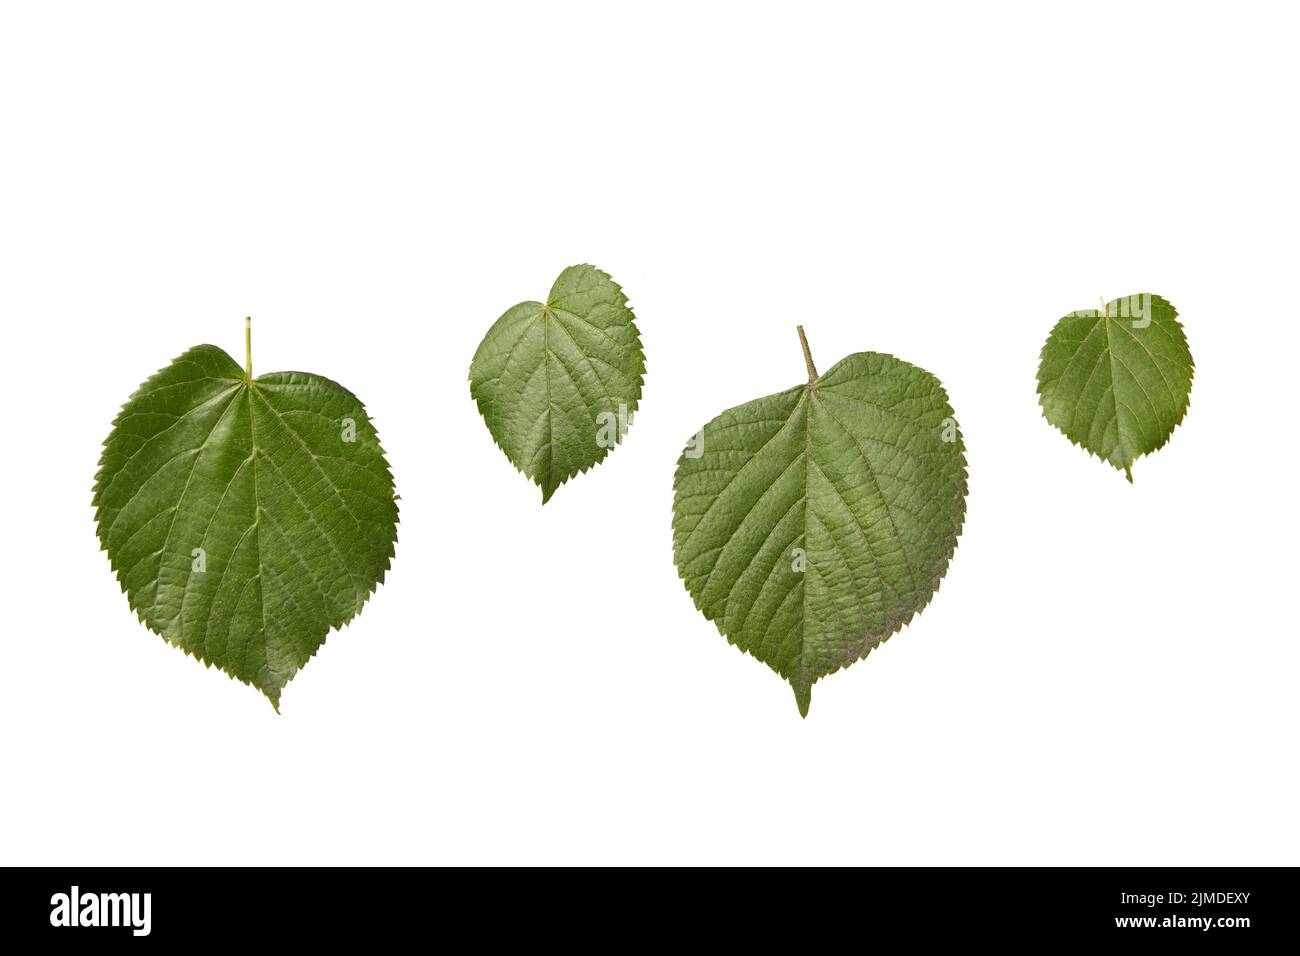 Ensemble de plantes à partir de feuilles texturées organiques fraîches de l'arbre de tilia sur un fond blanc. Banque D'Images